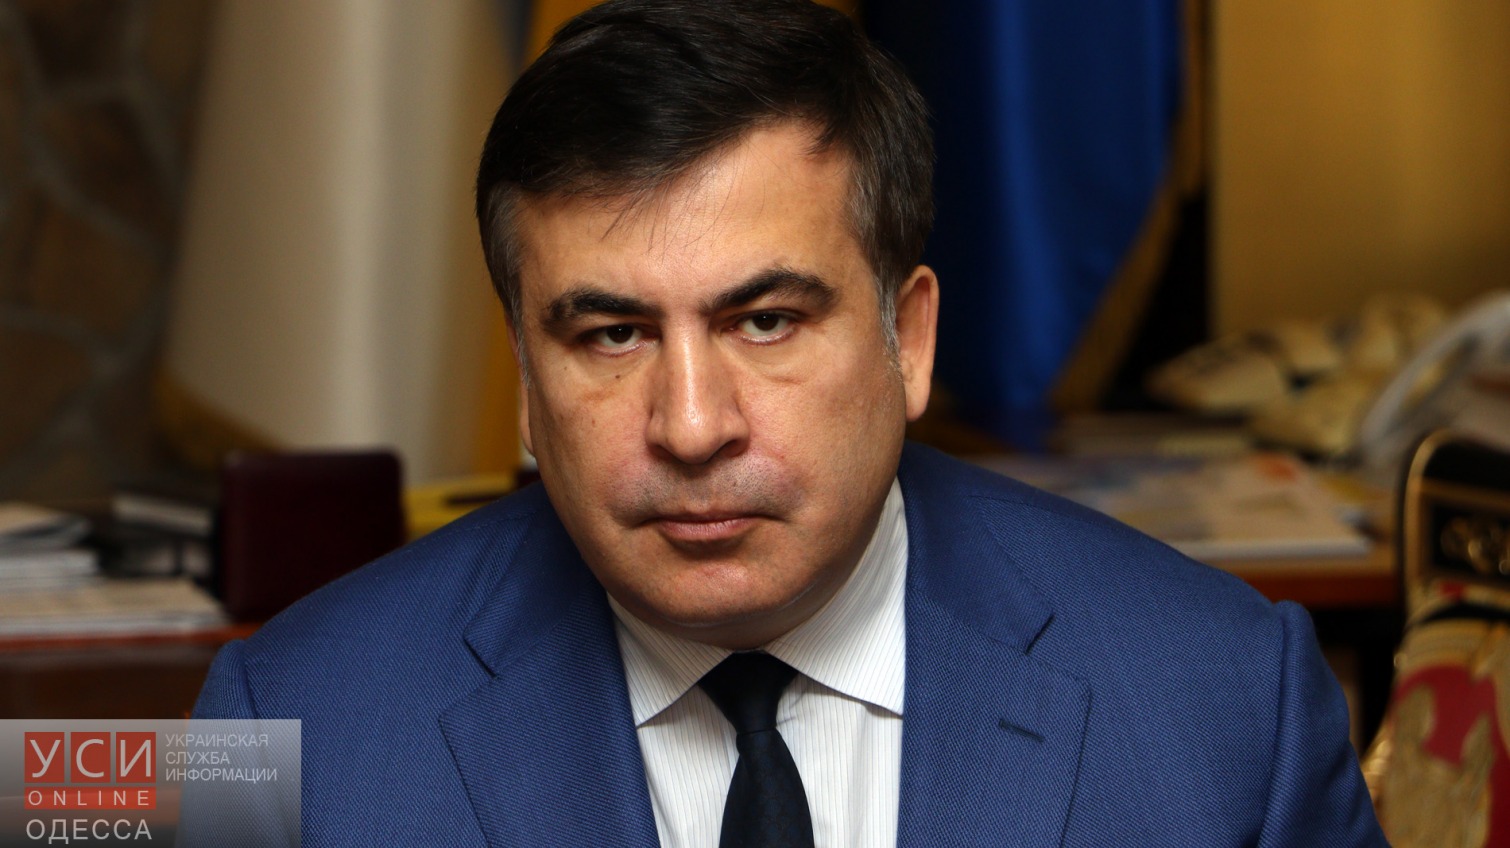 Саакашвили: облсовет хотел объявить мне вотум недоверия «фото»